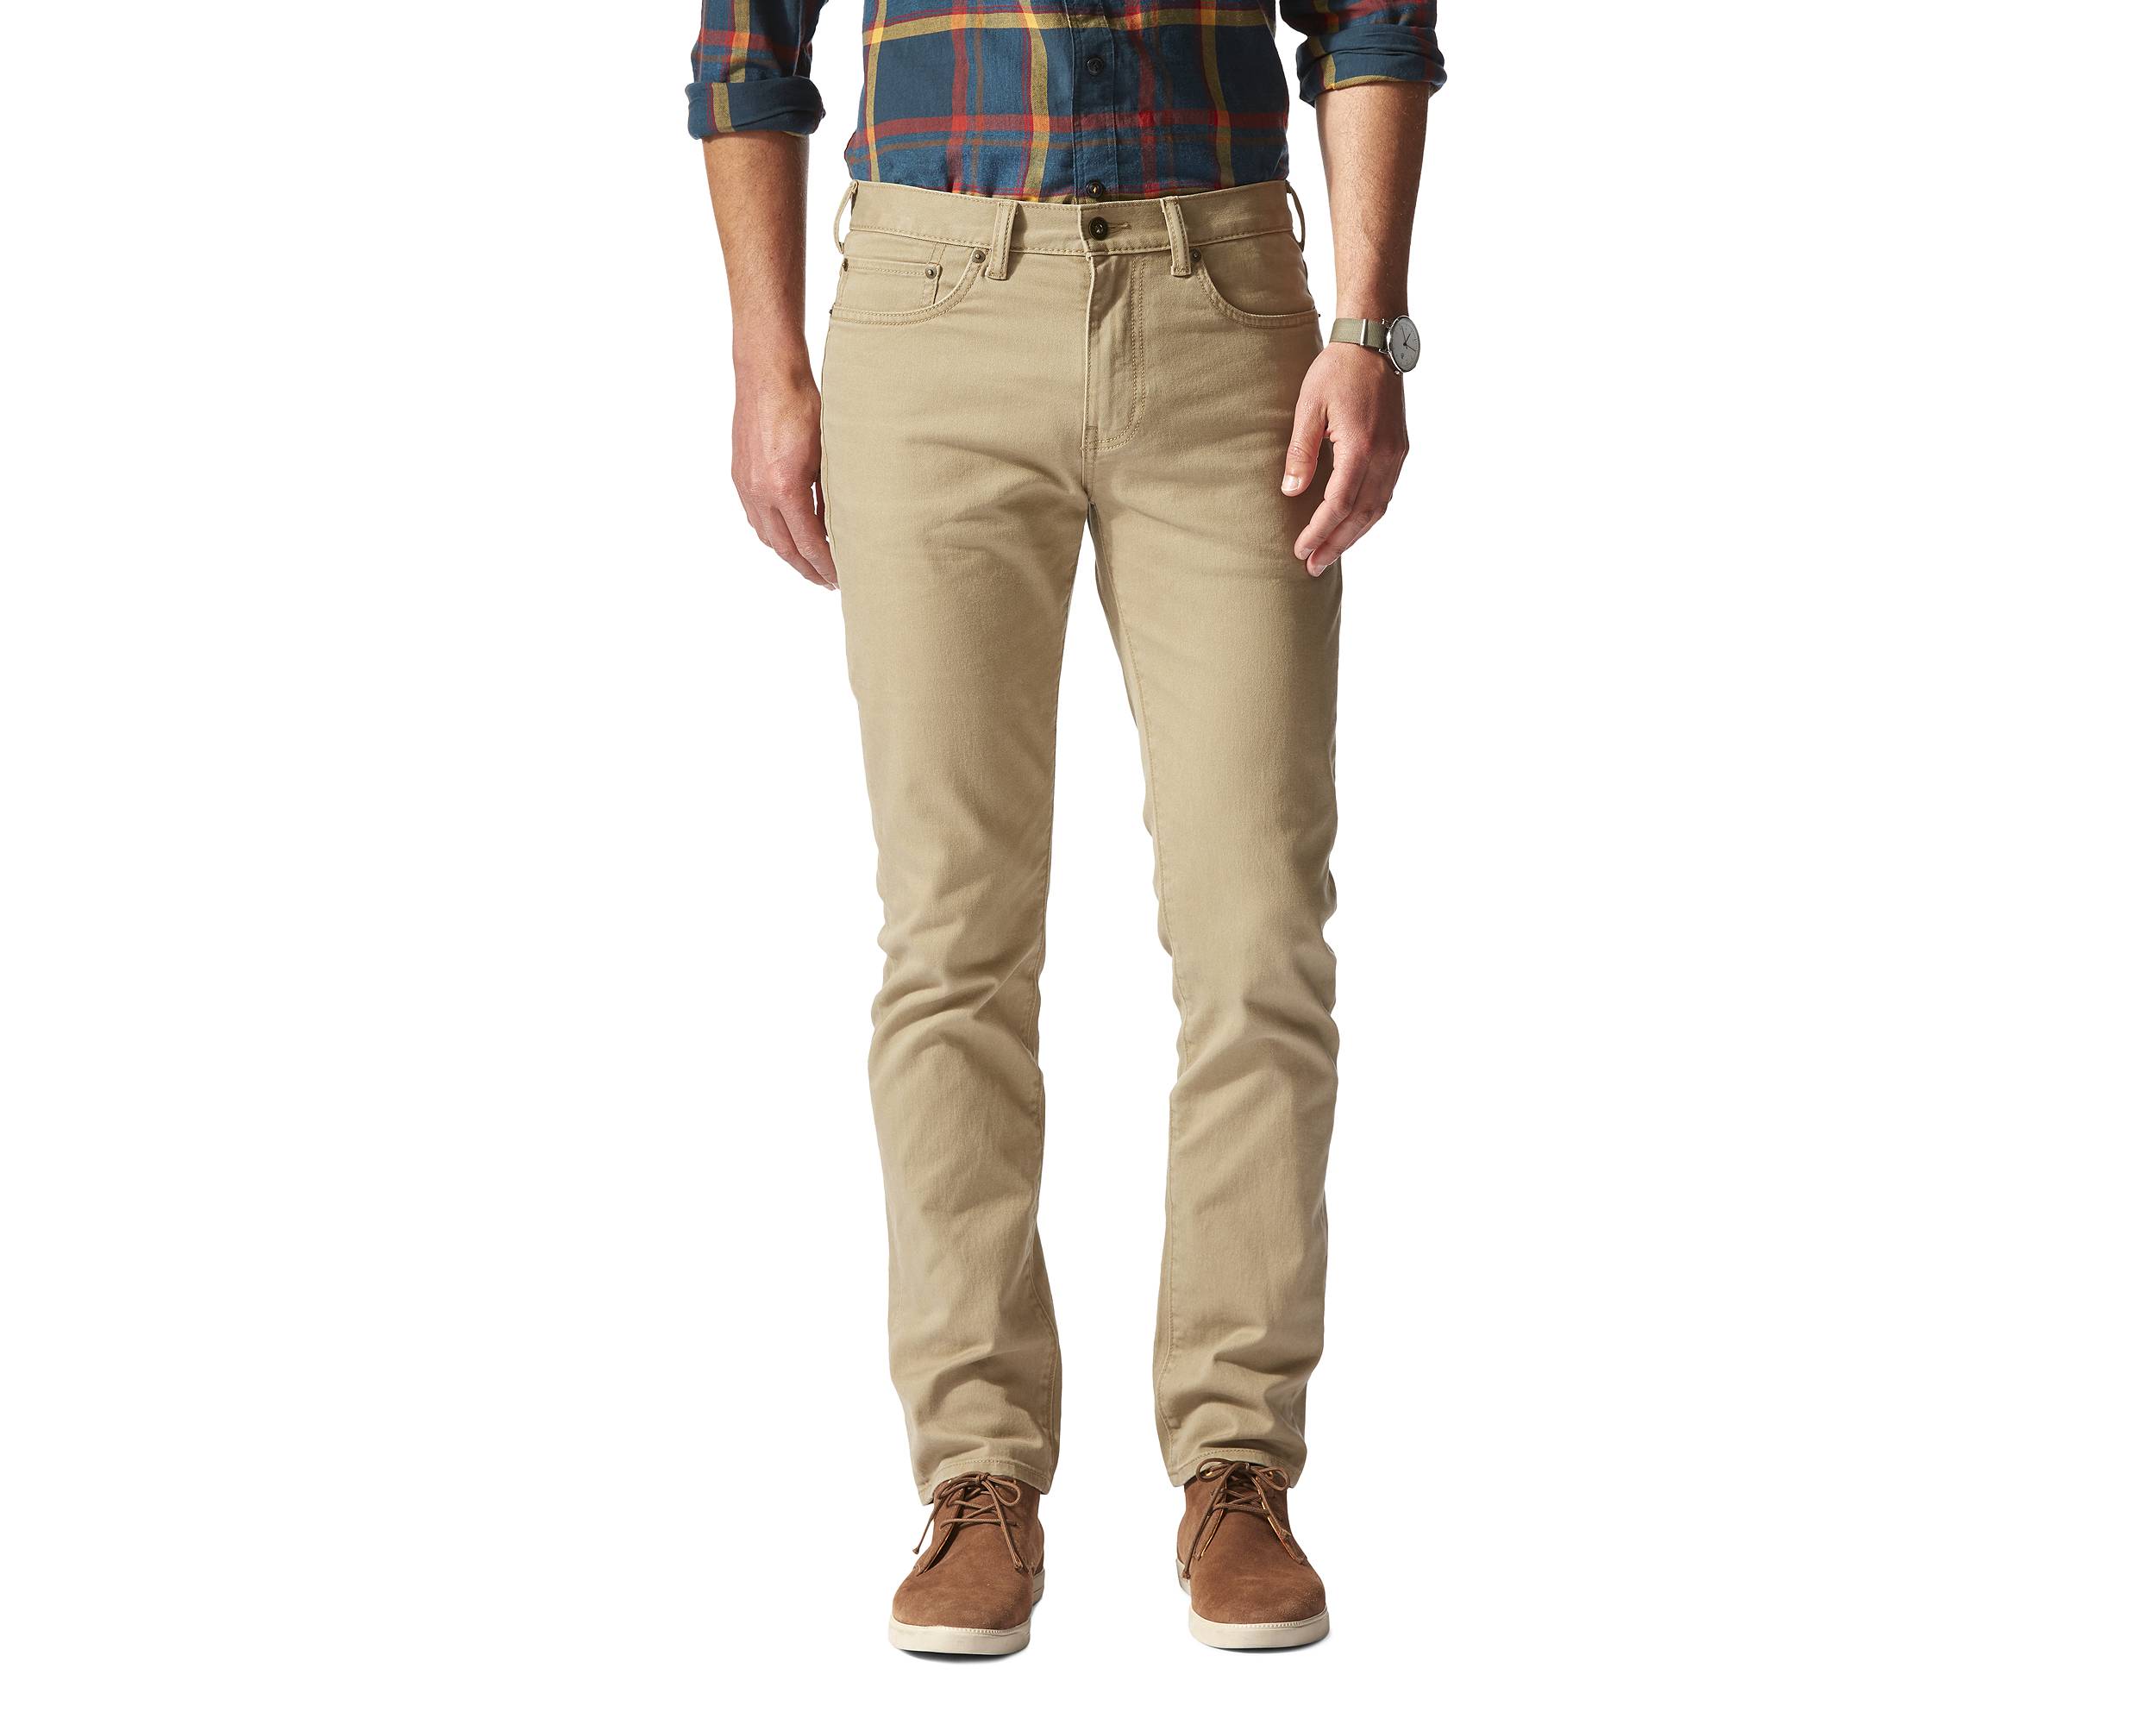 Men's Stretch Pants: Khaki Stretch Pants | Dockers®